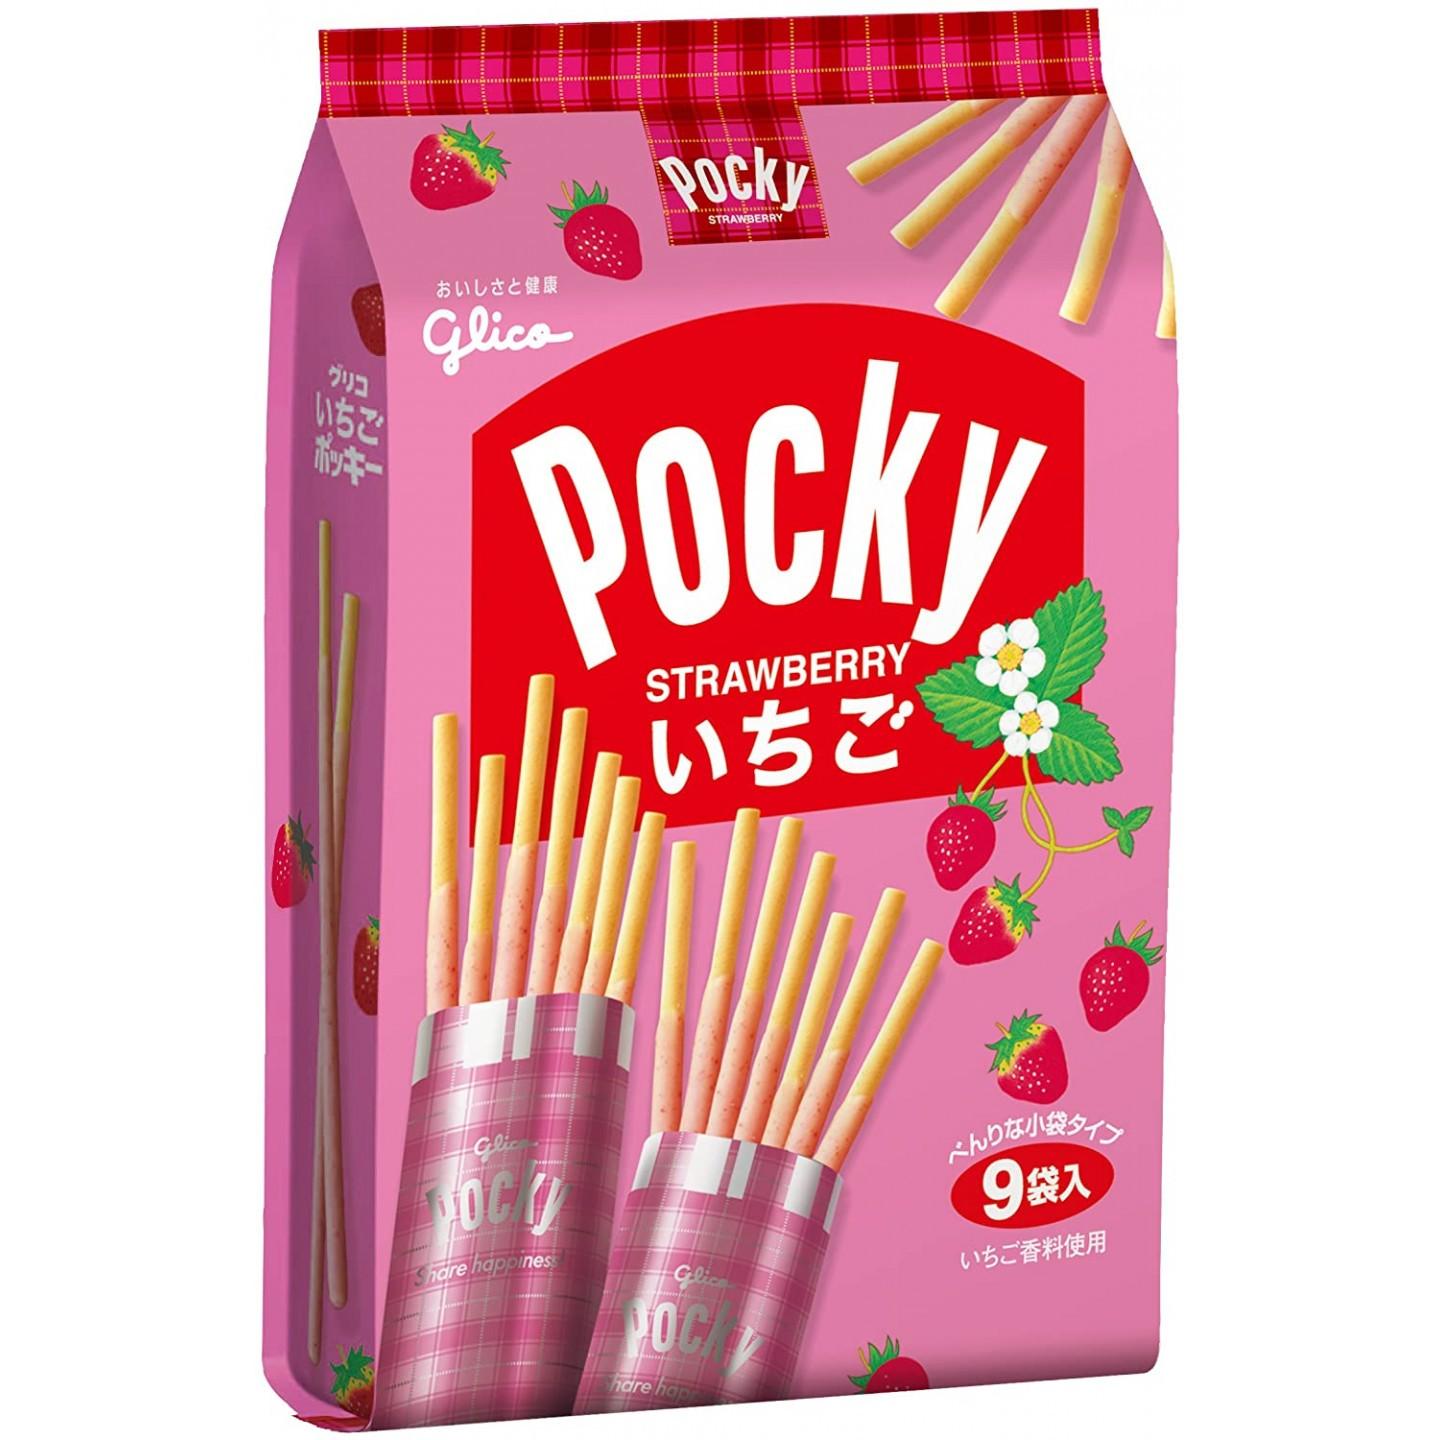 glico-pocky-strawberry-biscuit-sticks